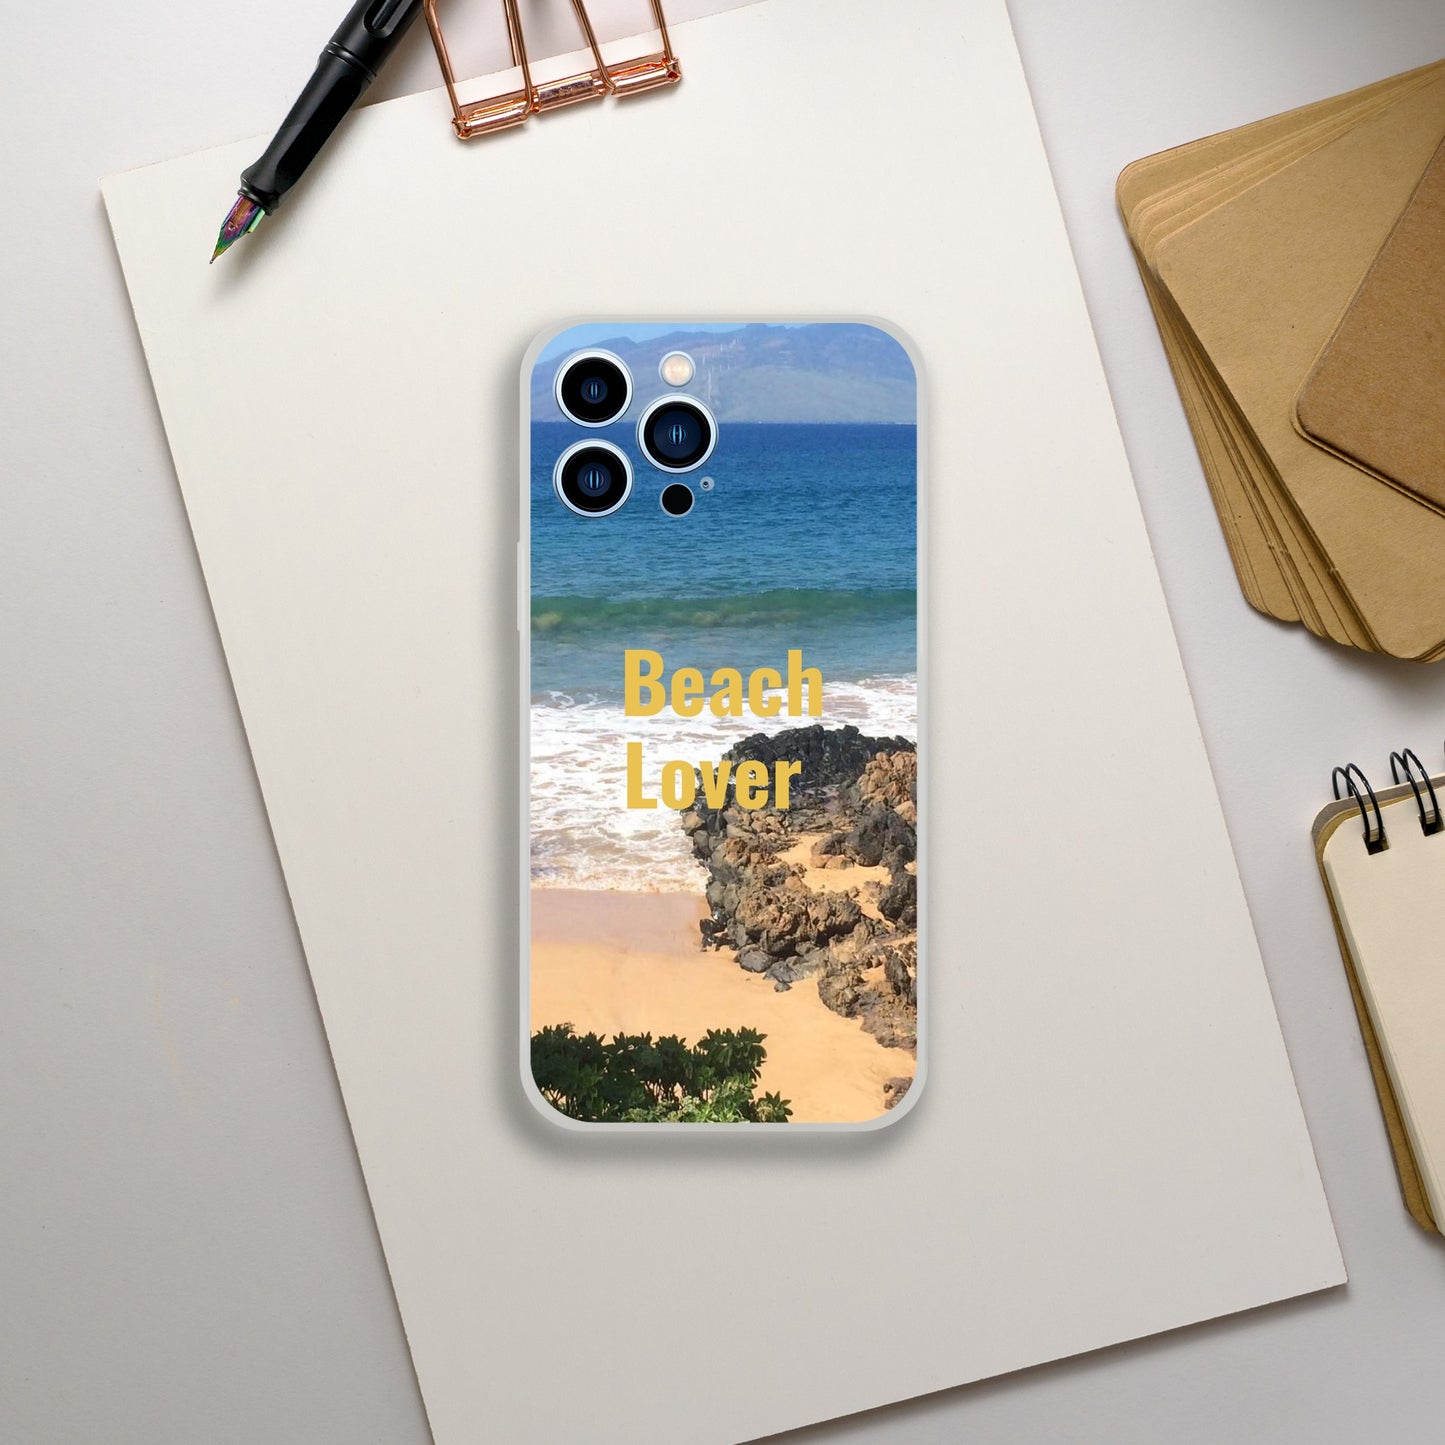 Flexi case for phone Beach lover with Hawaiian Beach